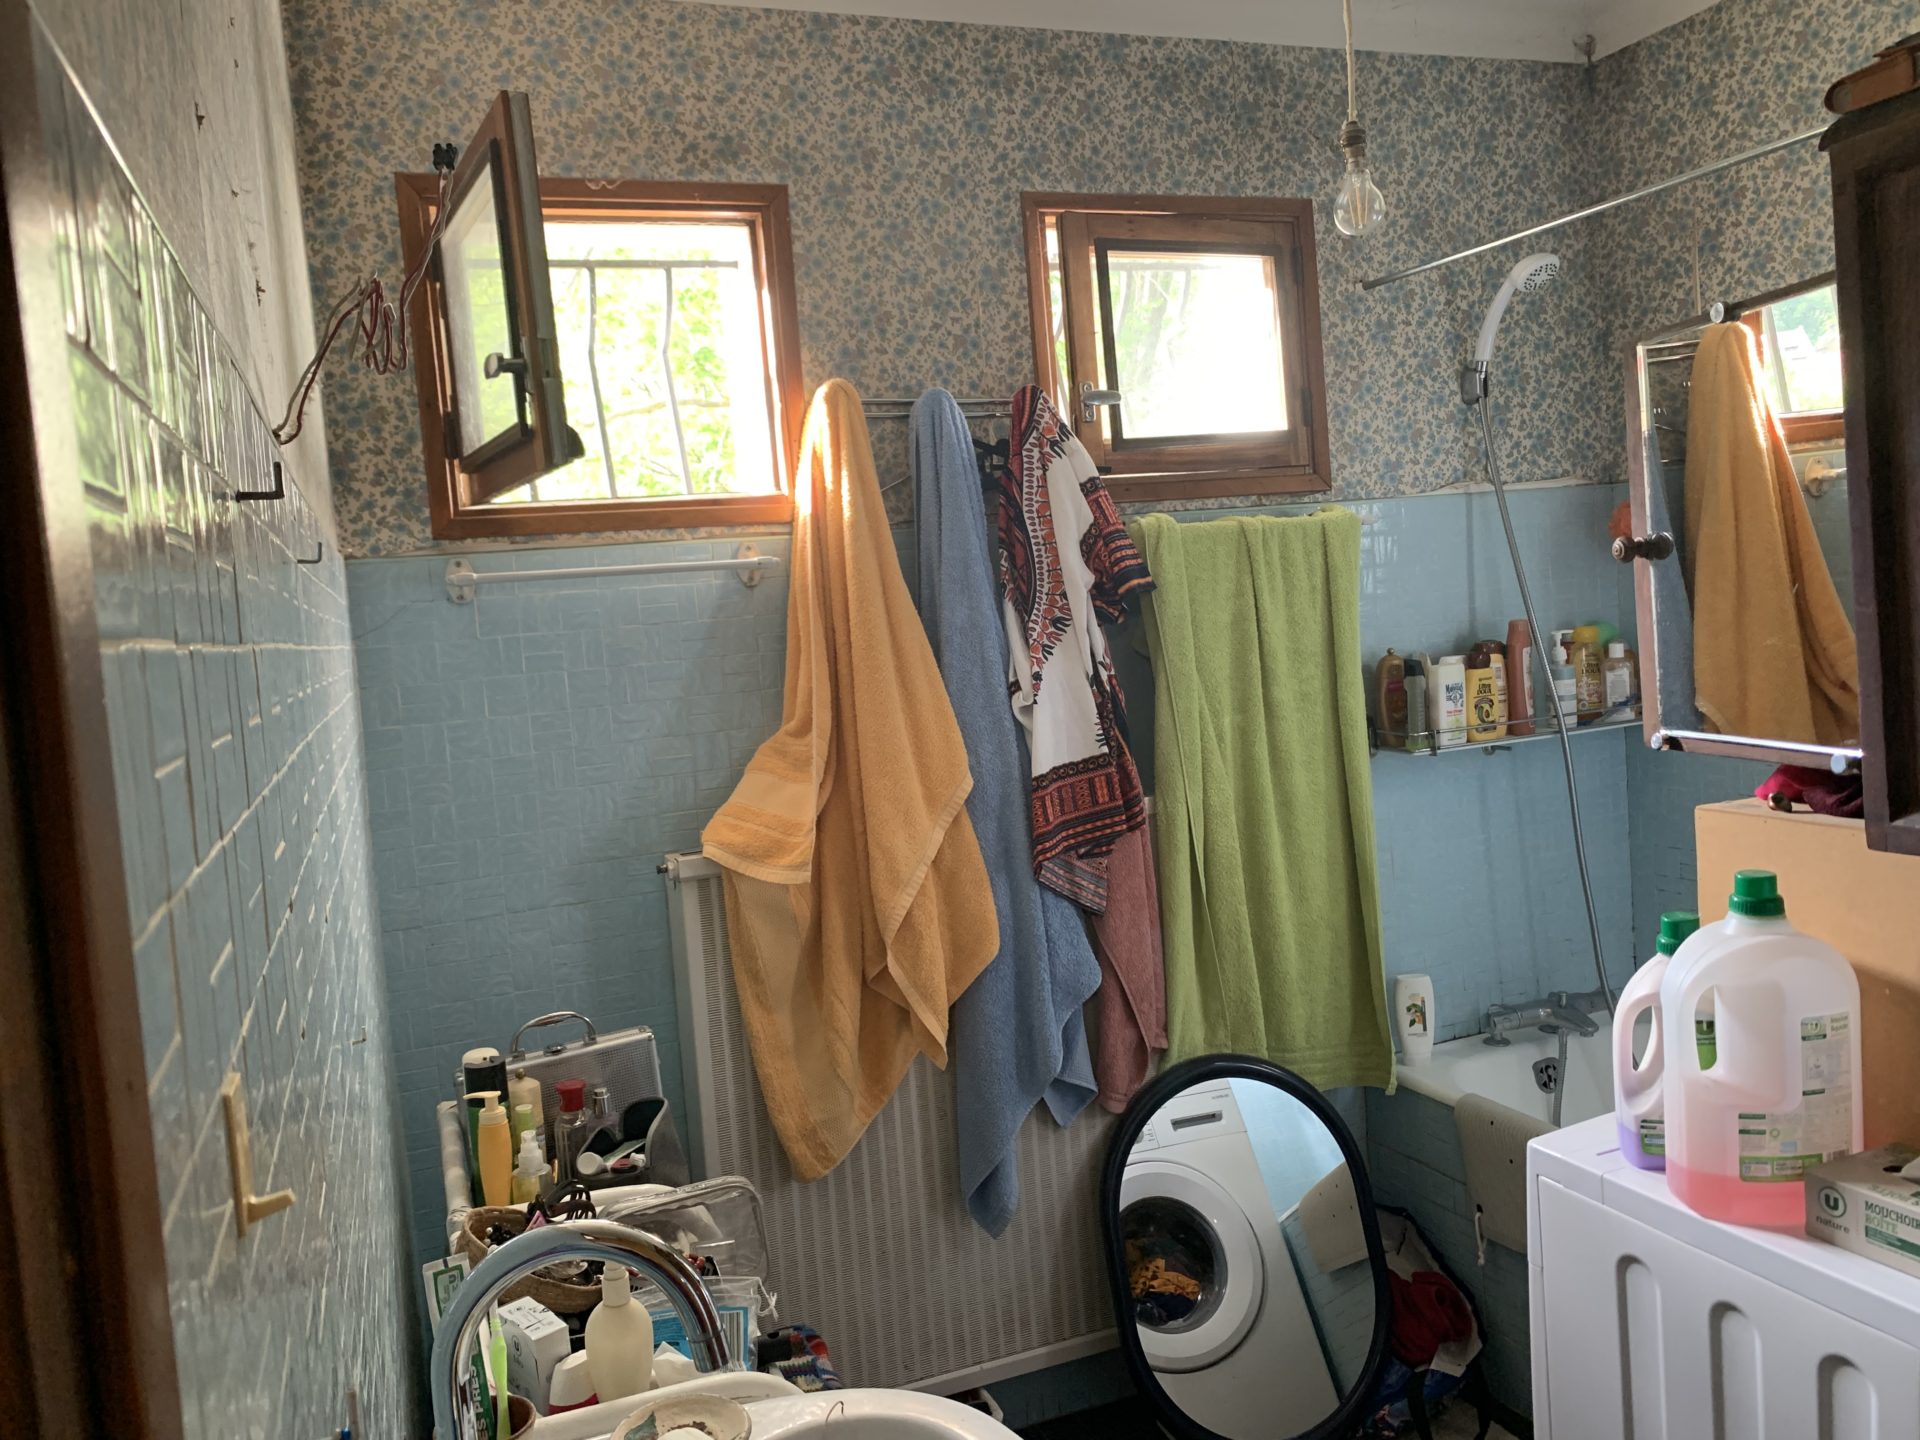 La salle de bain avant : lave-linge dangereux à cet emplacement et baignoire non adaptée pour une dame de 97 ans.